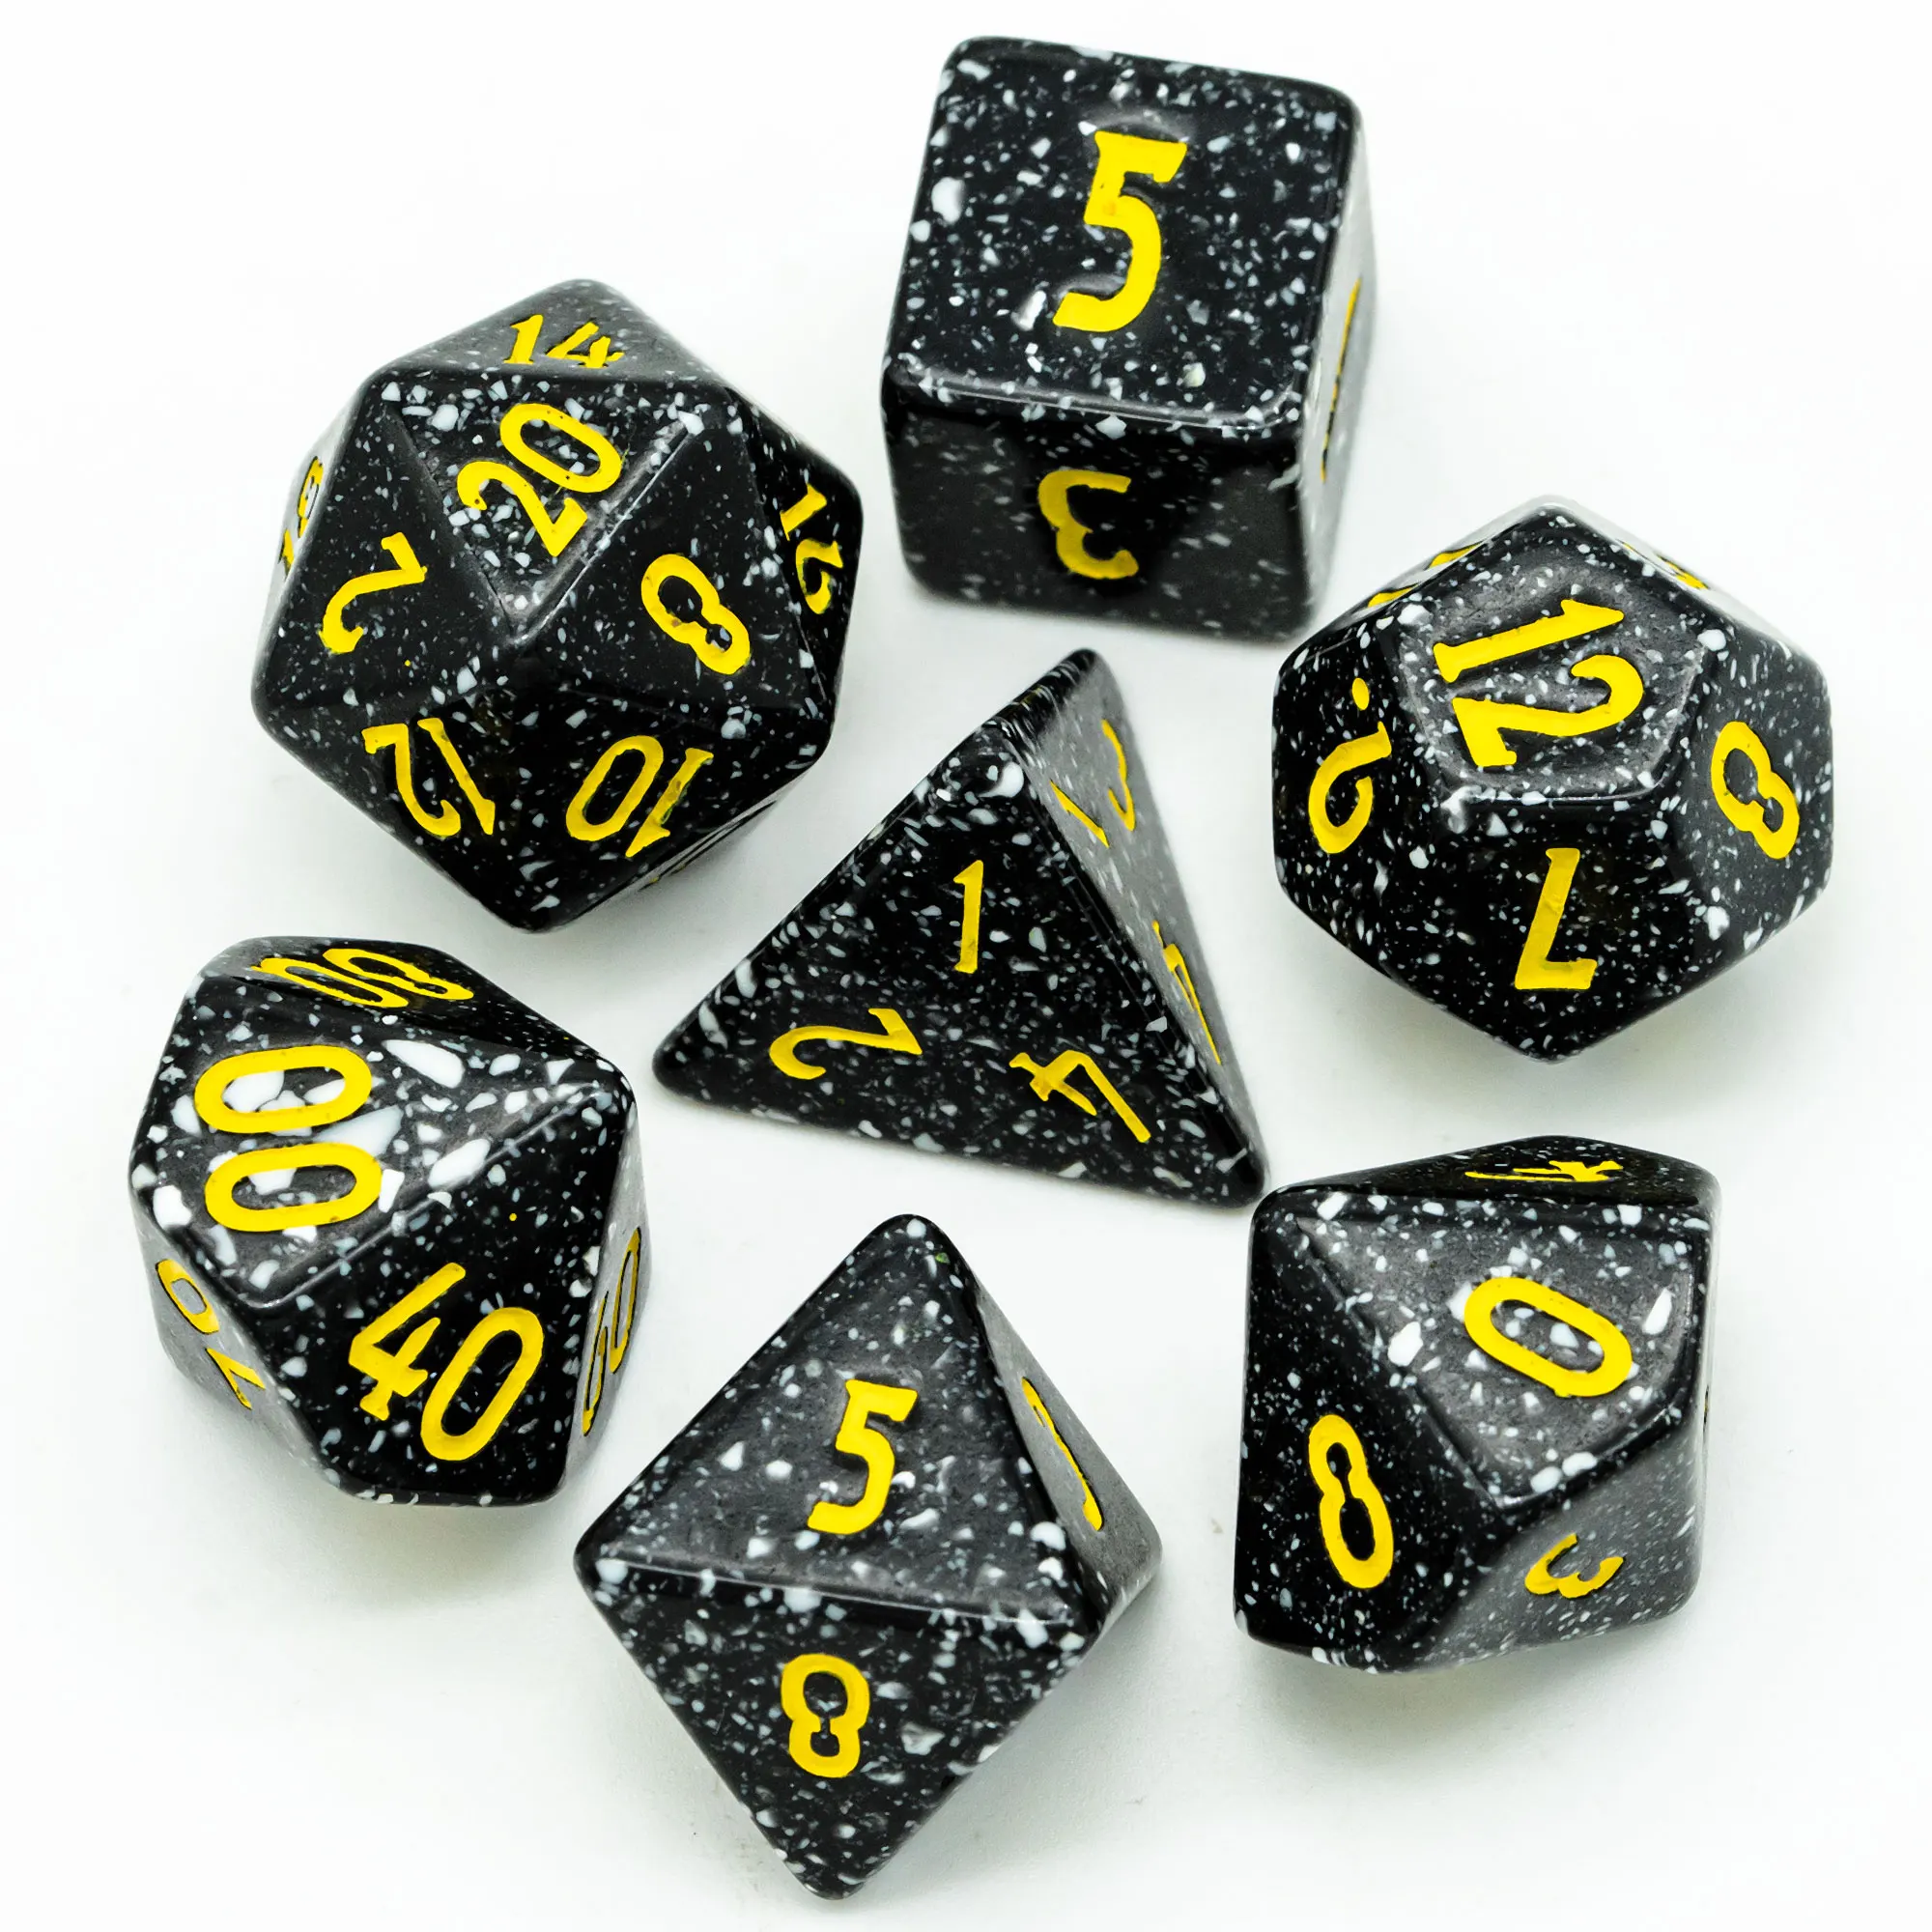 6 Sided Lot D&D RPG DnD D6 Black Digital Number Polyhedral Dice Set 5 